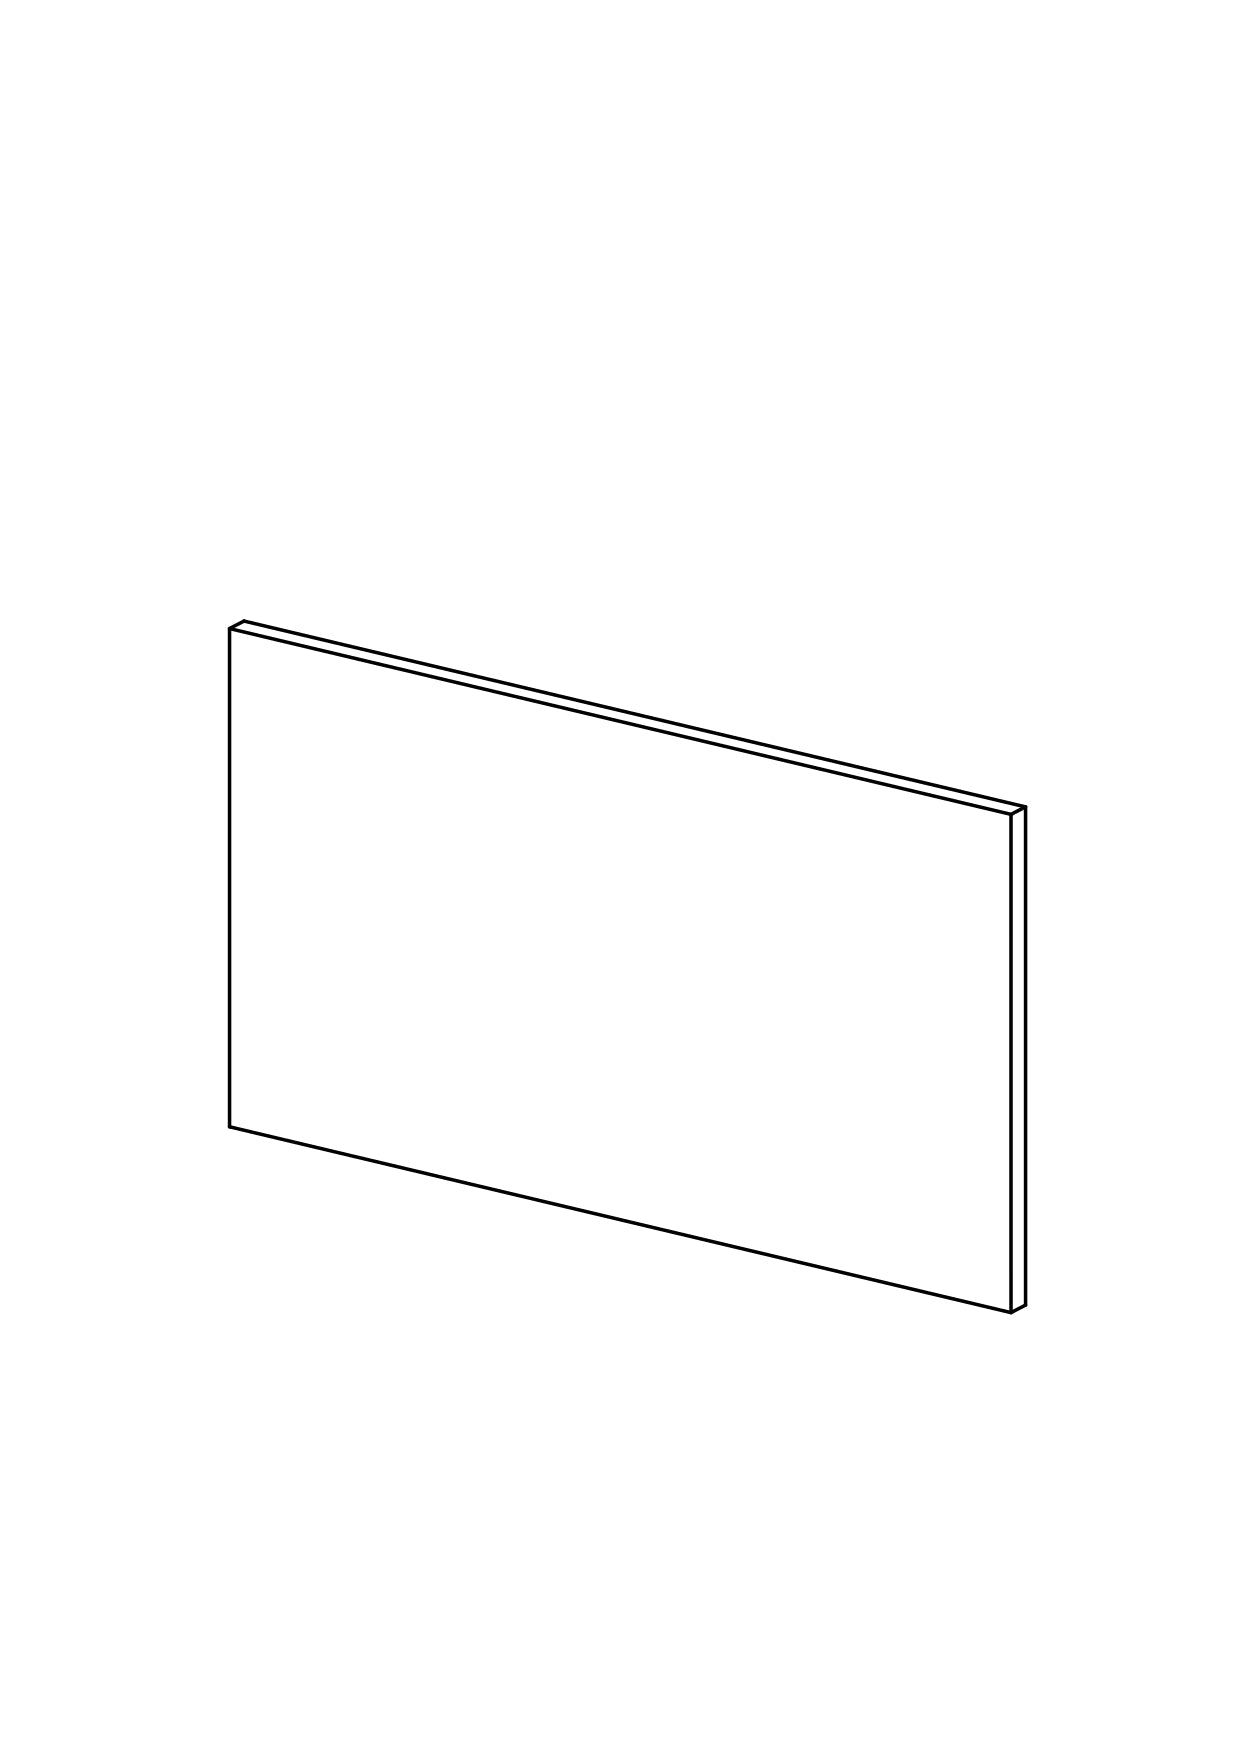 160x90 - Cover Panel - Plain - Timber Veneer - METOD